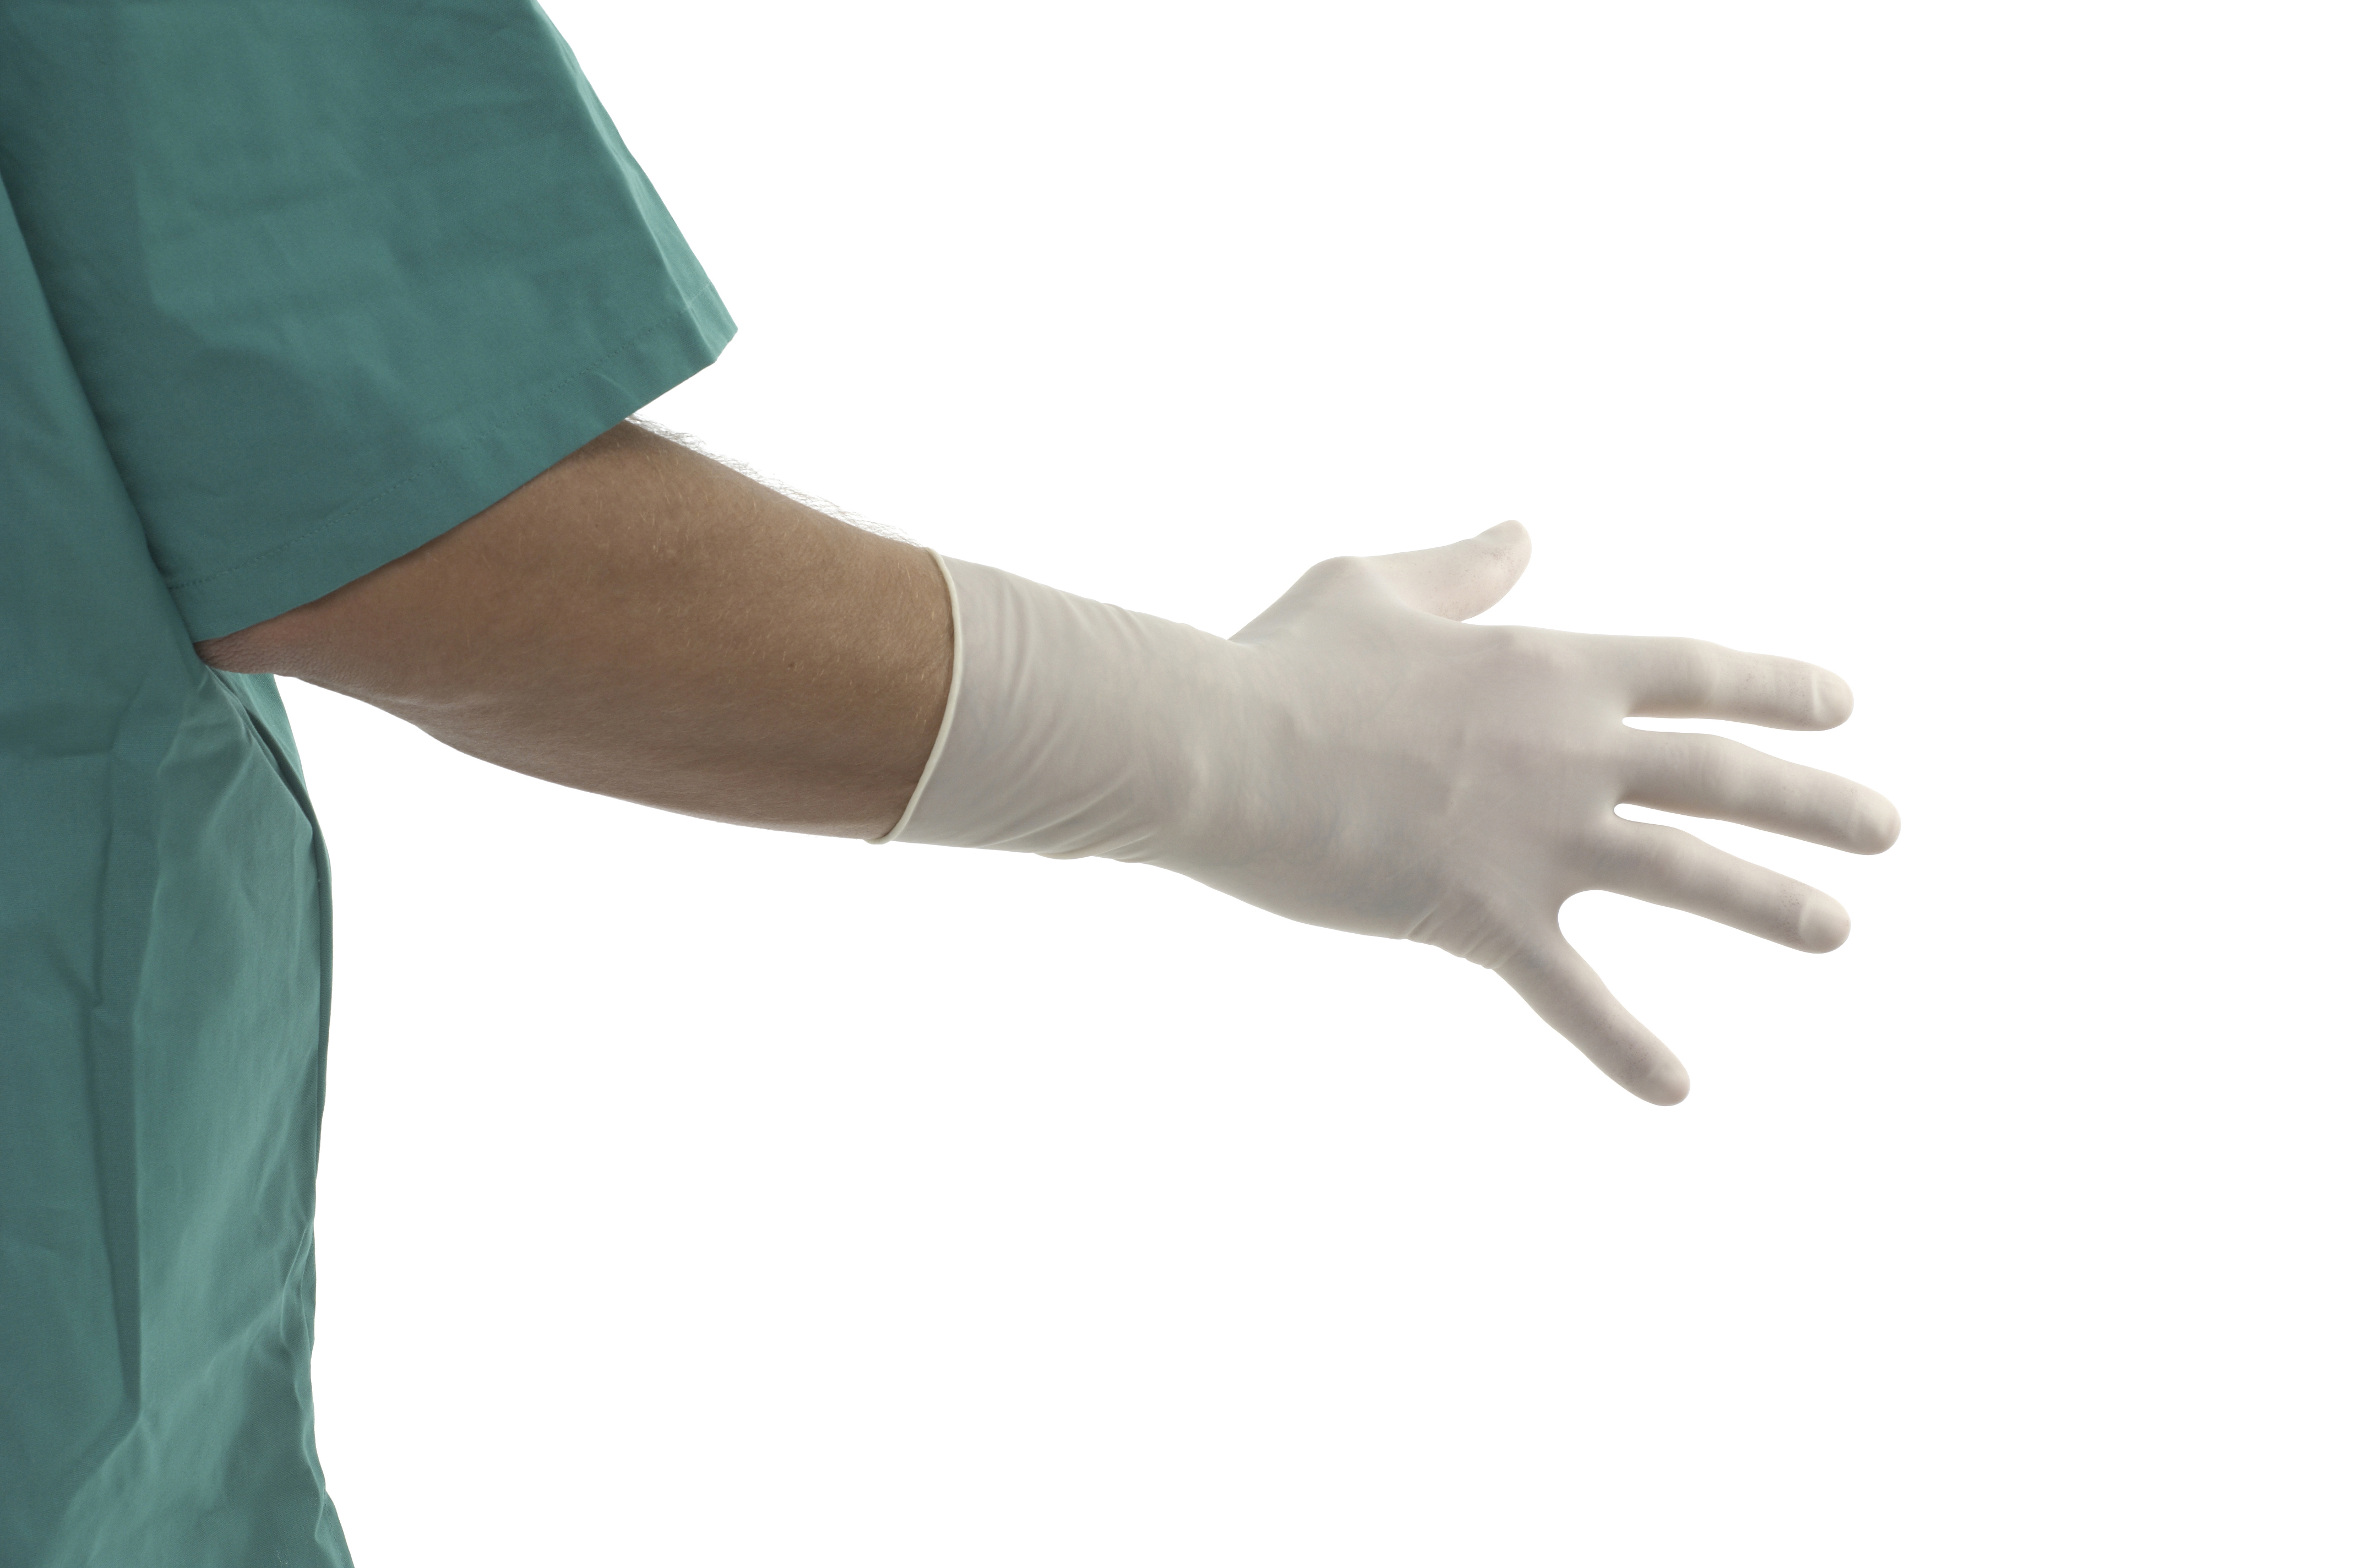 US-KRUTEX Polyisoprene surgical gloves, size 9.0, 25/pk